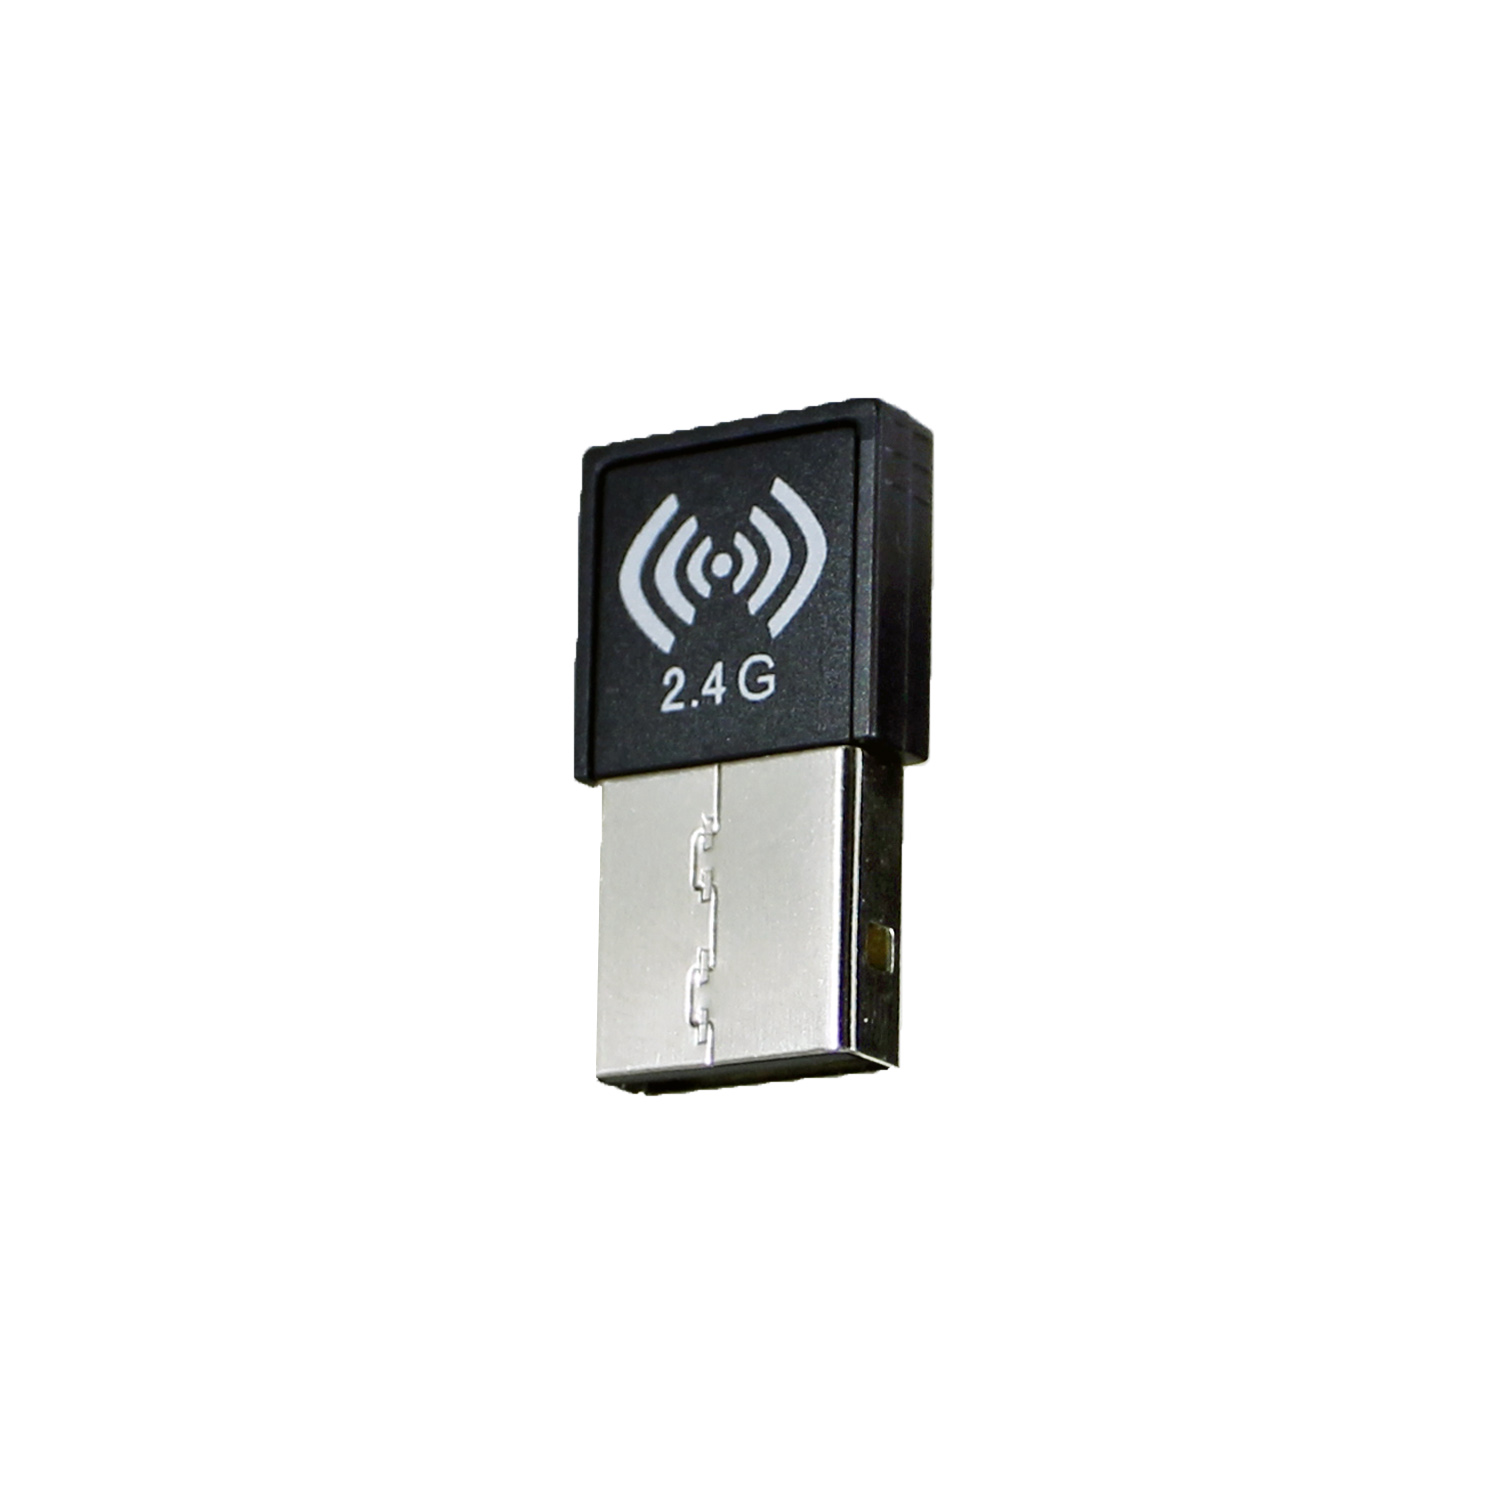 USB Receiver (WKB 3100UB Serial K14-15s) - Adesso Inc ::: Your 